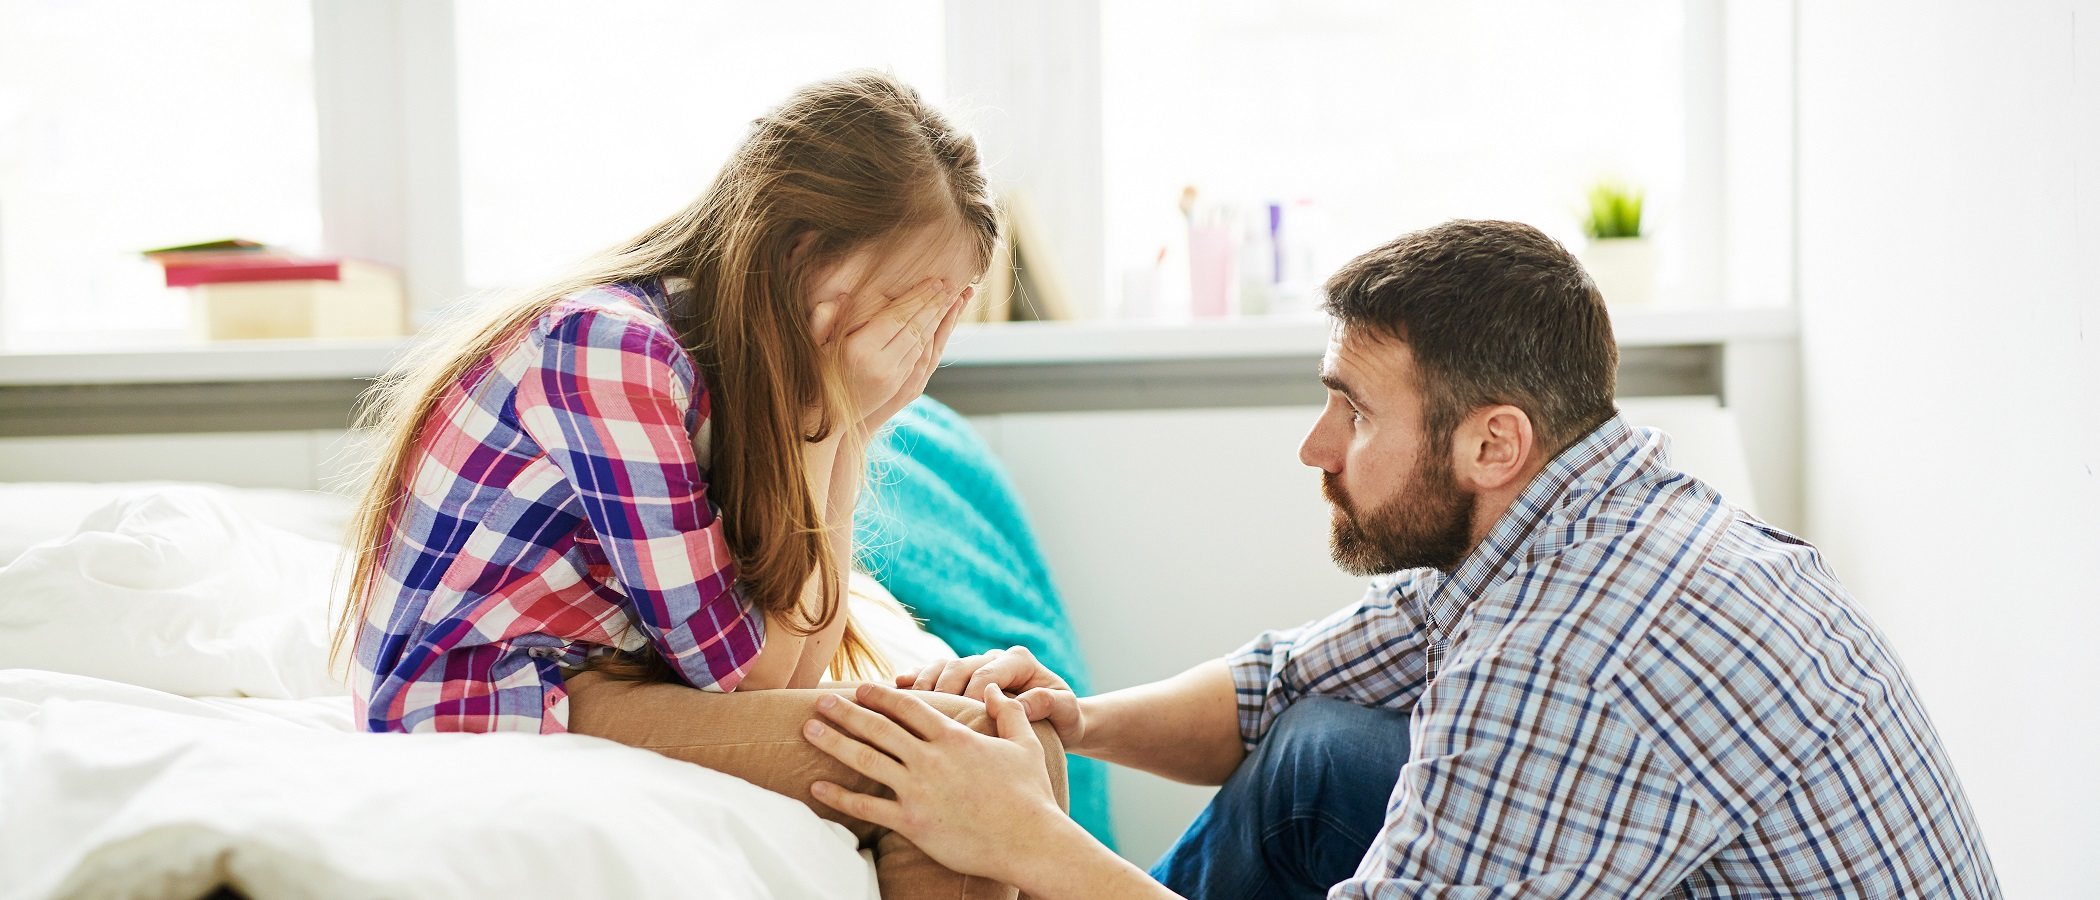 Qué debe saber tu hija adolescente sobre relaciones de pareja